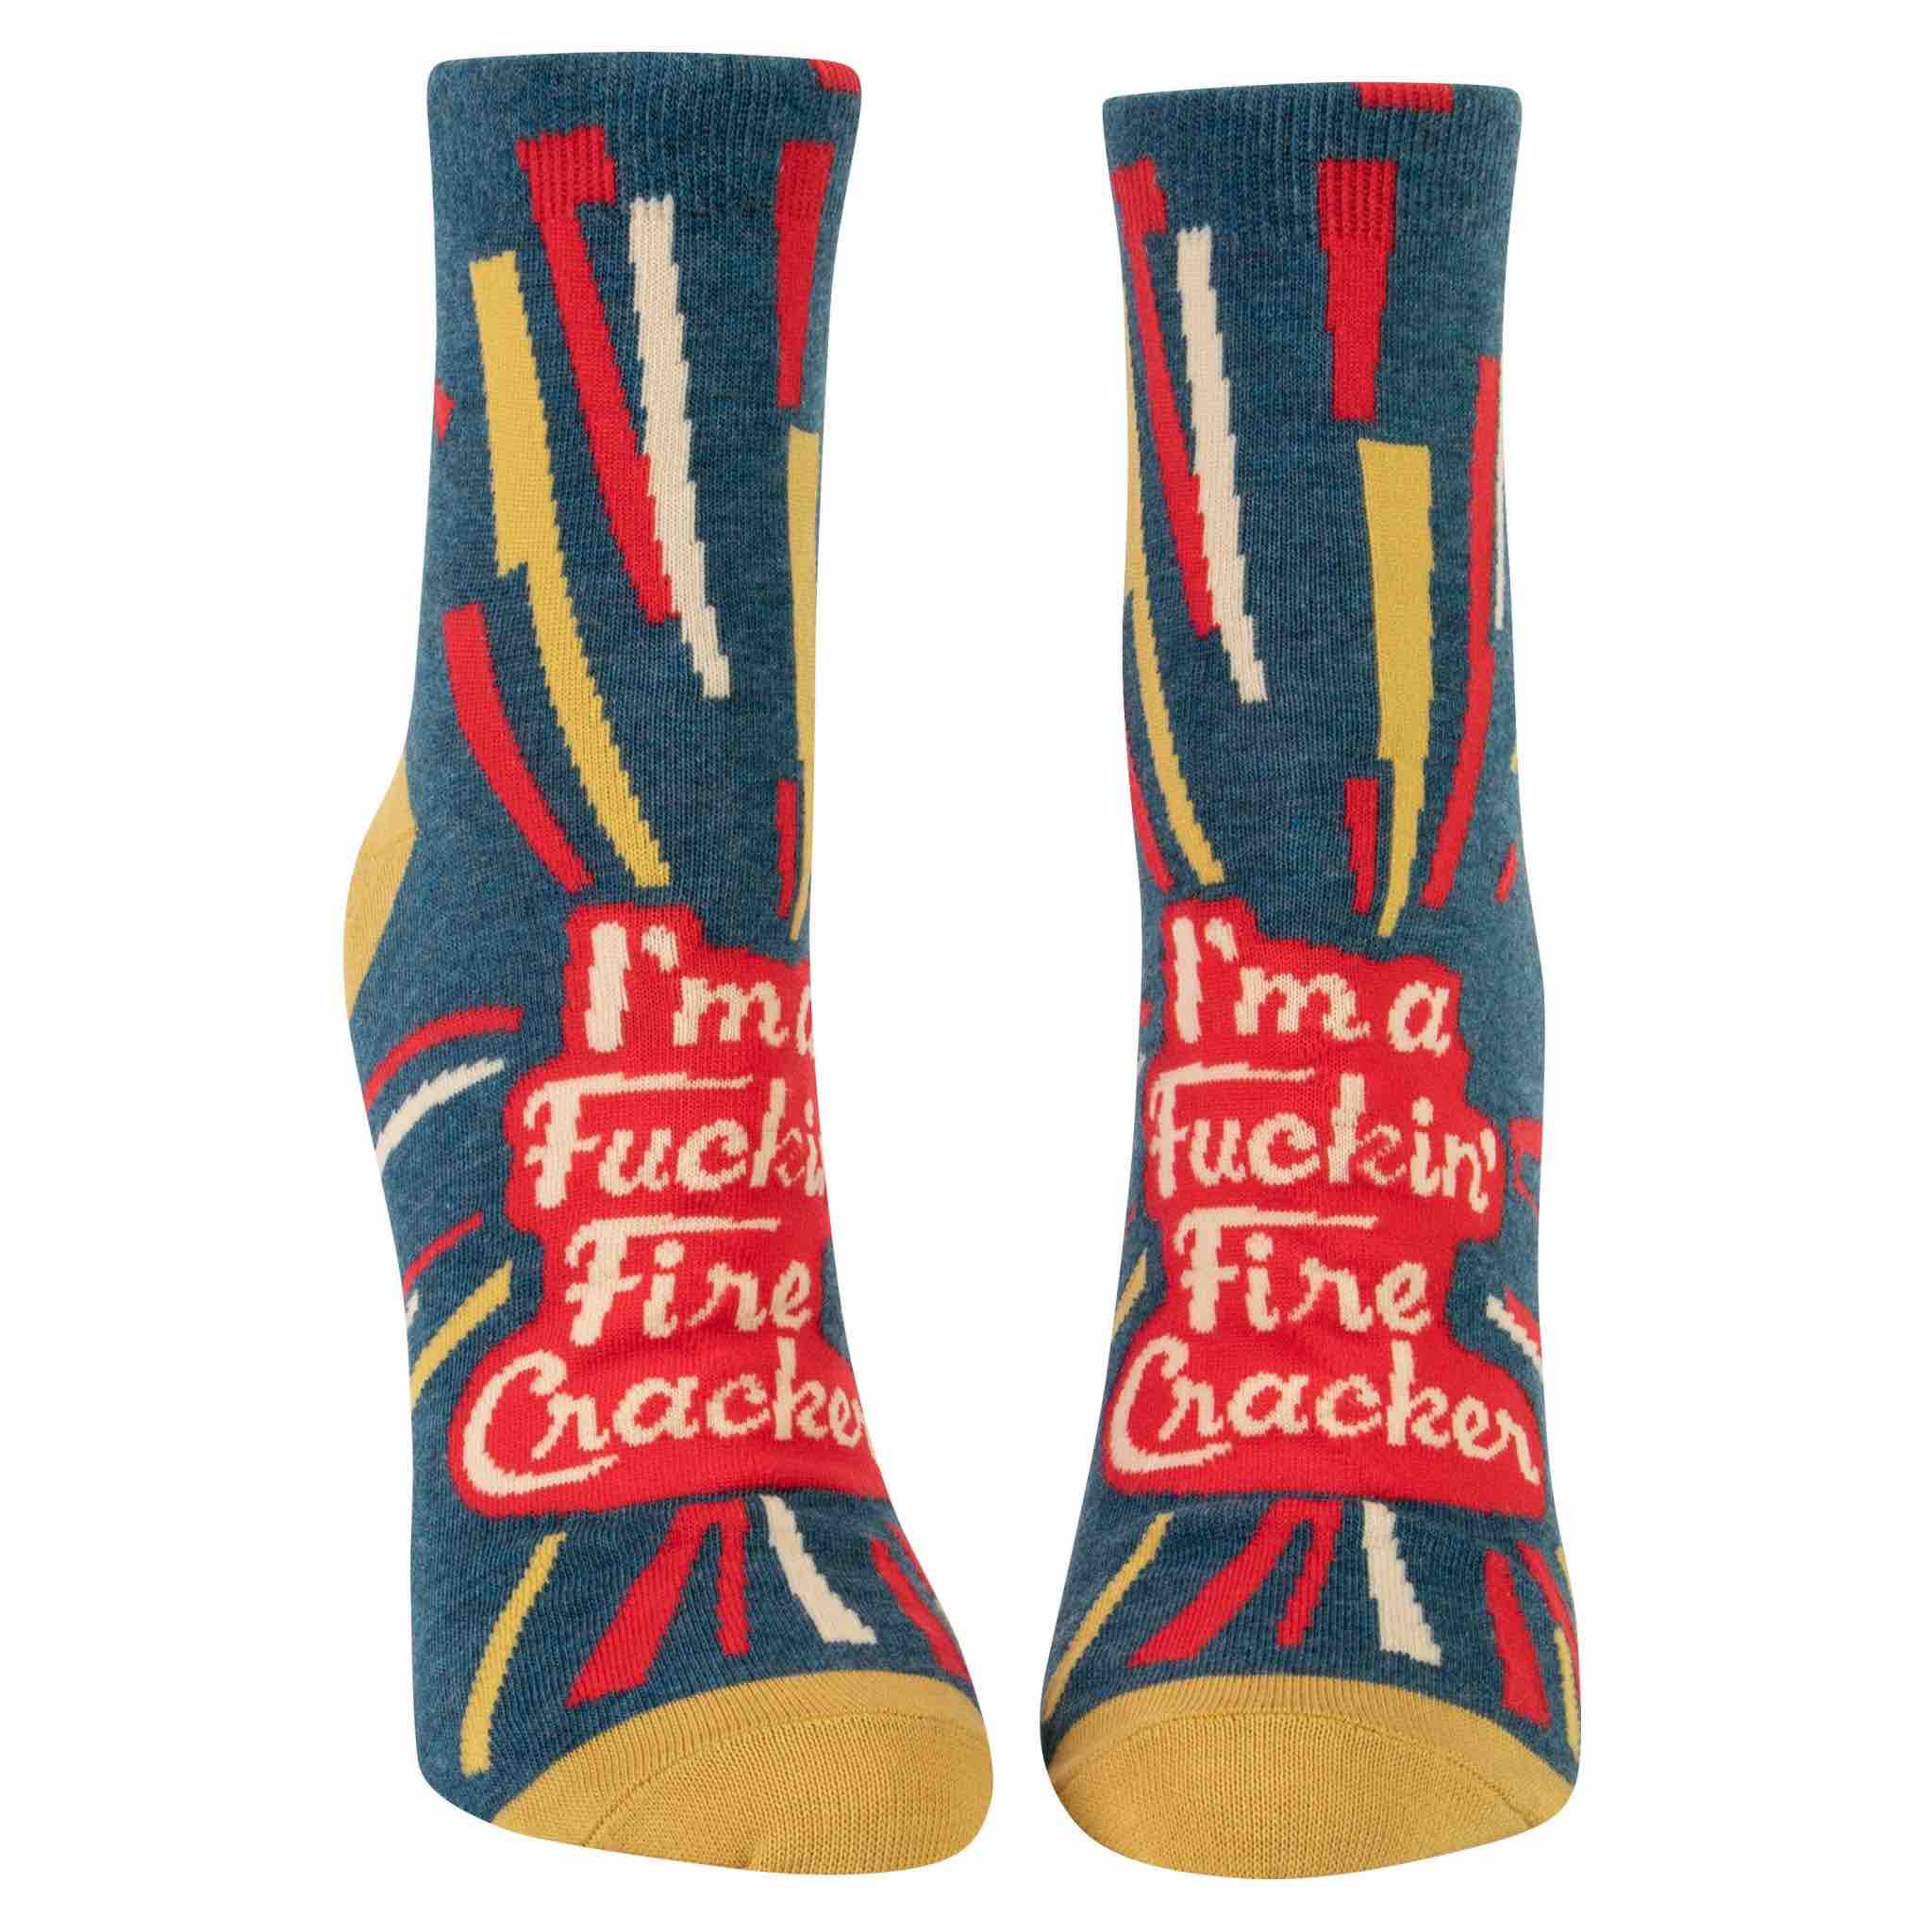 Blue Q Women's Ankle Socks | Firecracker